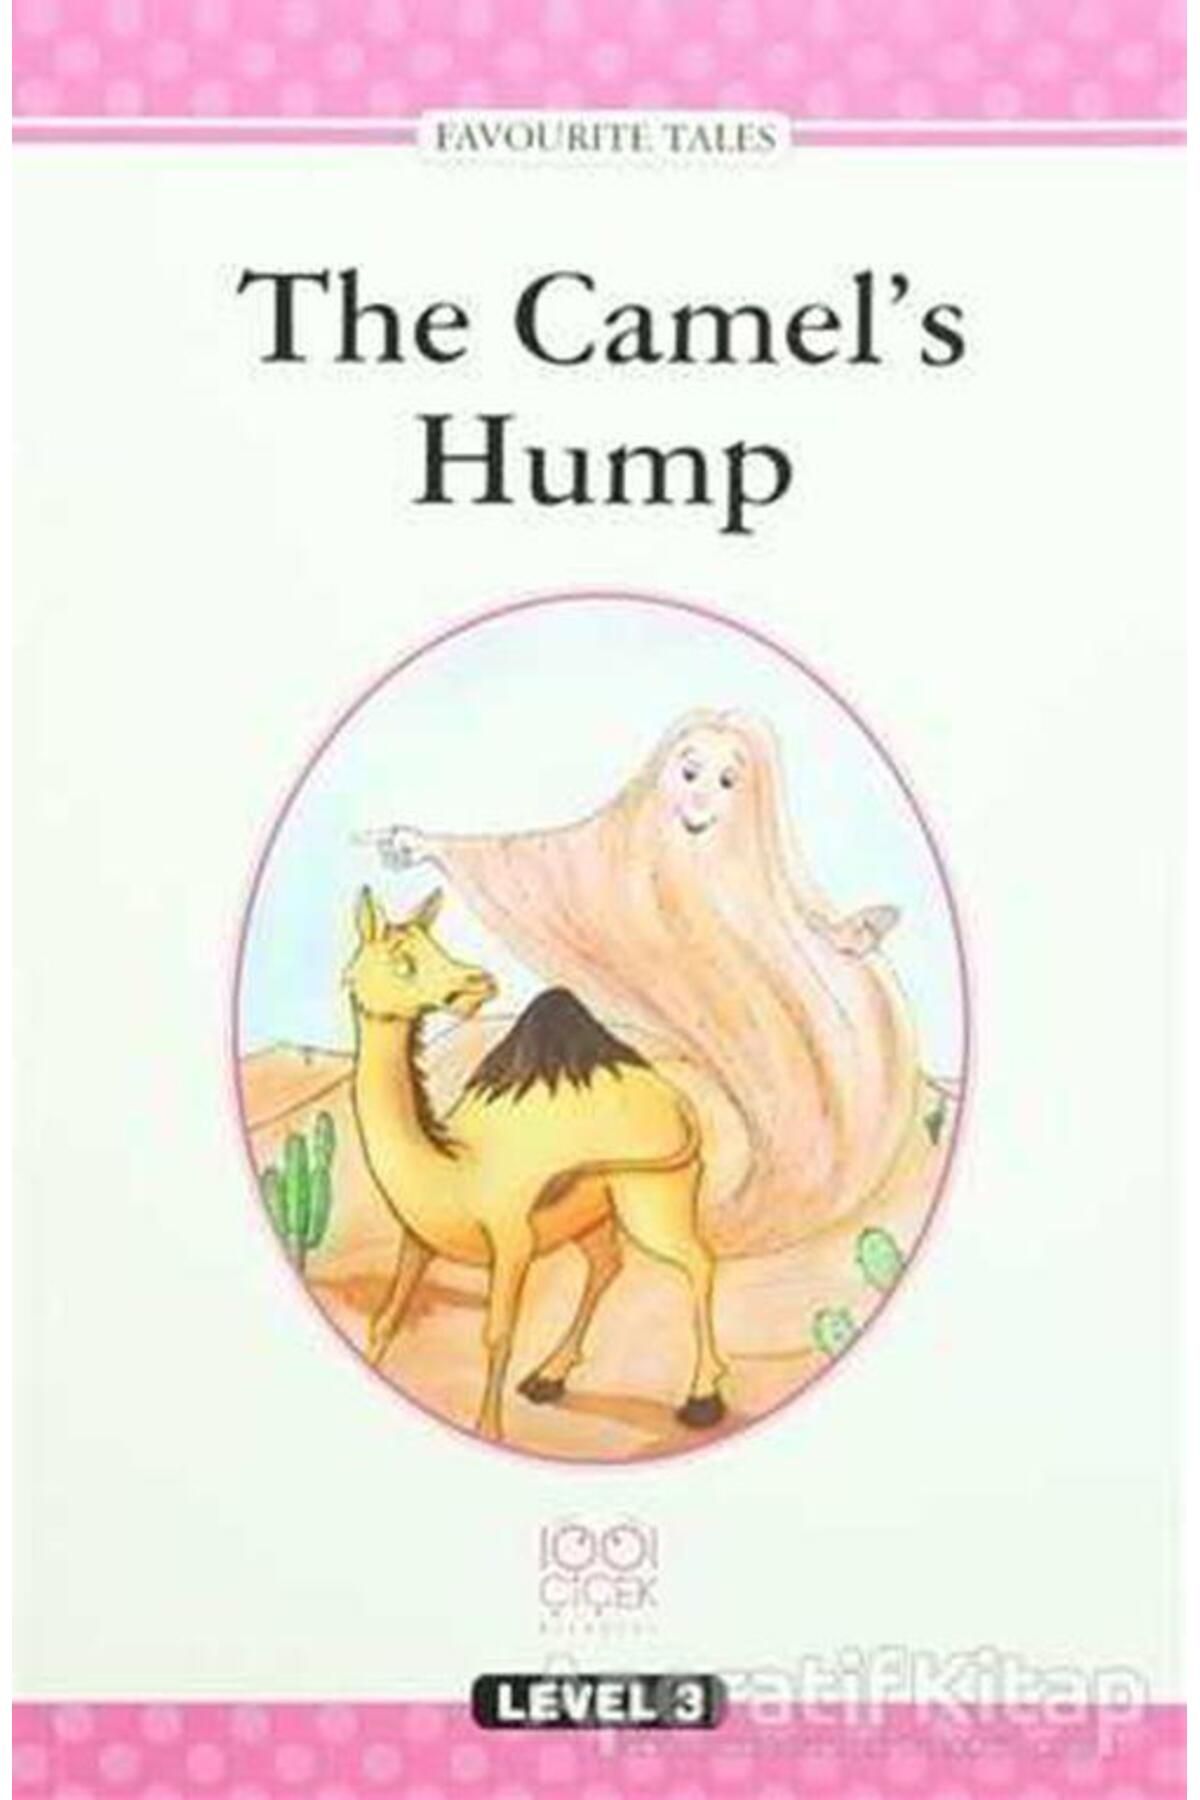 1001 Çiçek Kitaplar The Camels Hump - Kolektif - 1001 Çiçek Kitaplar